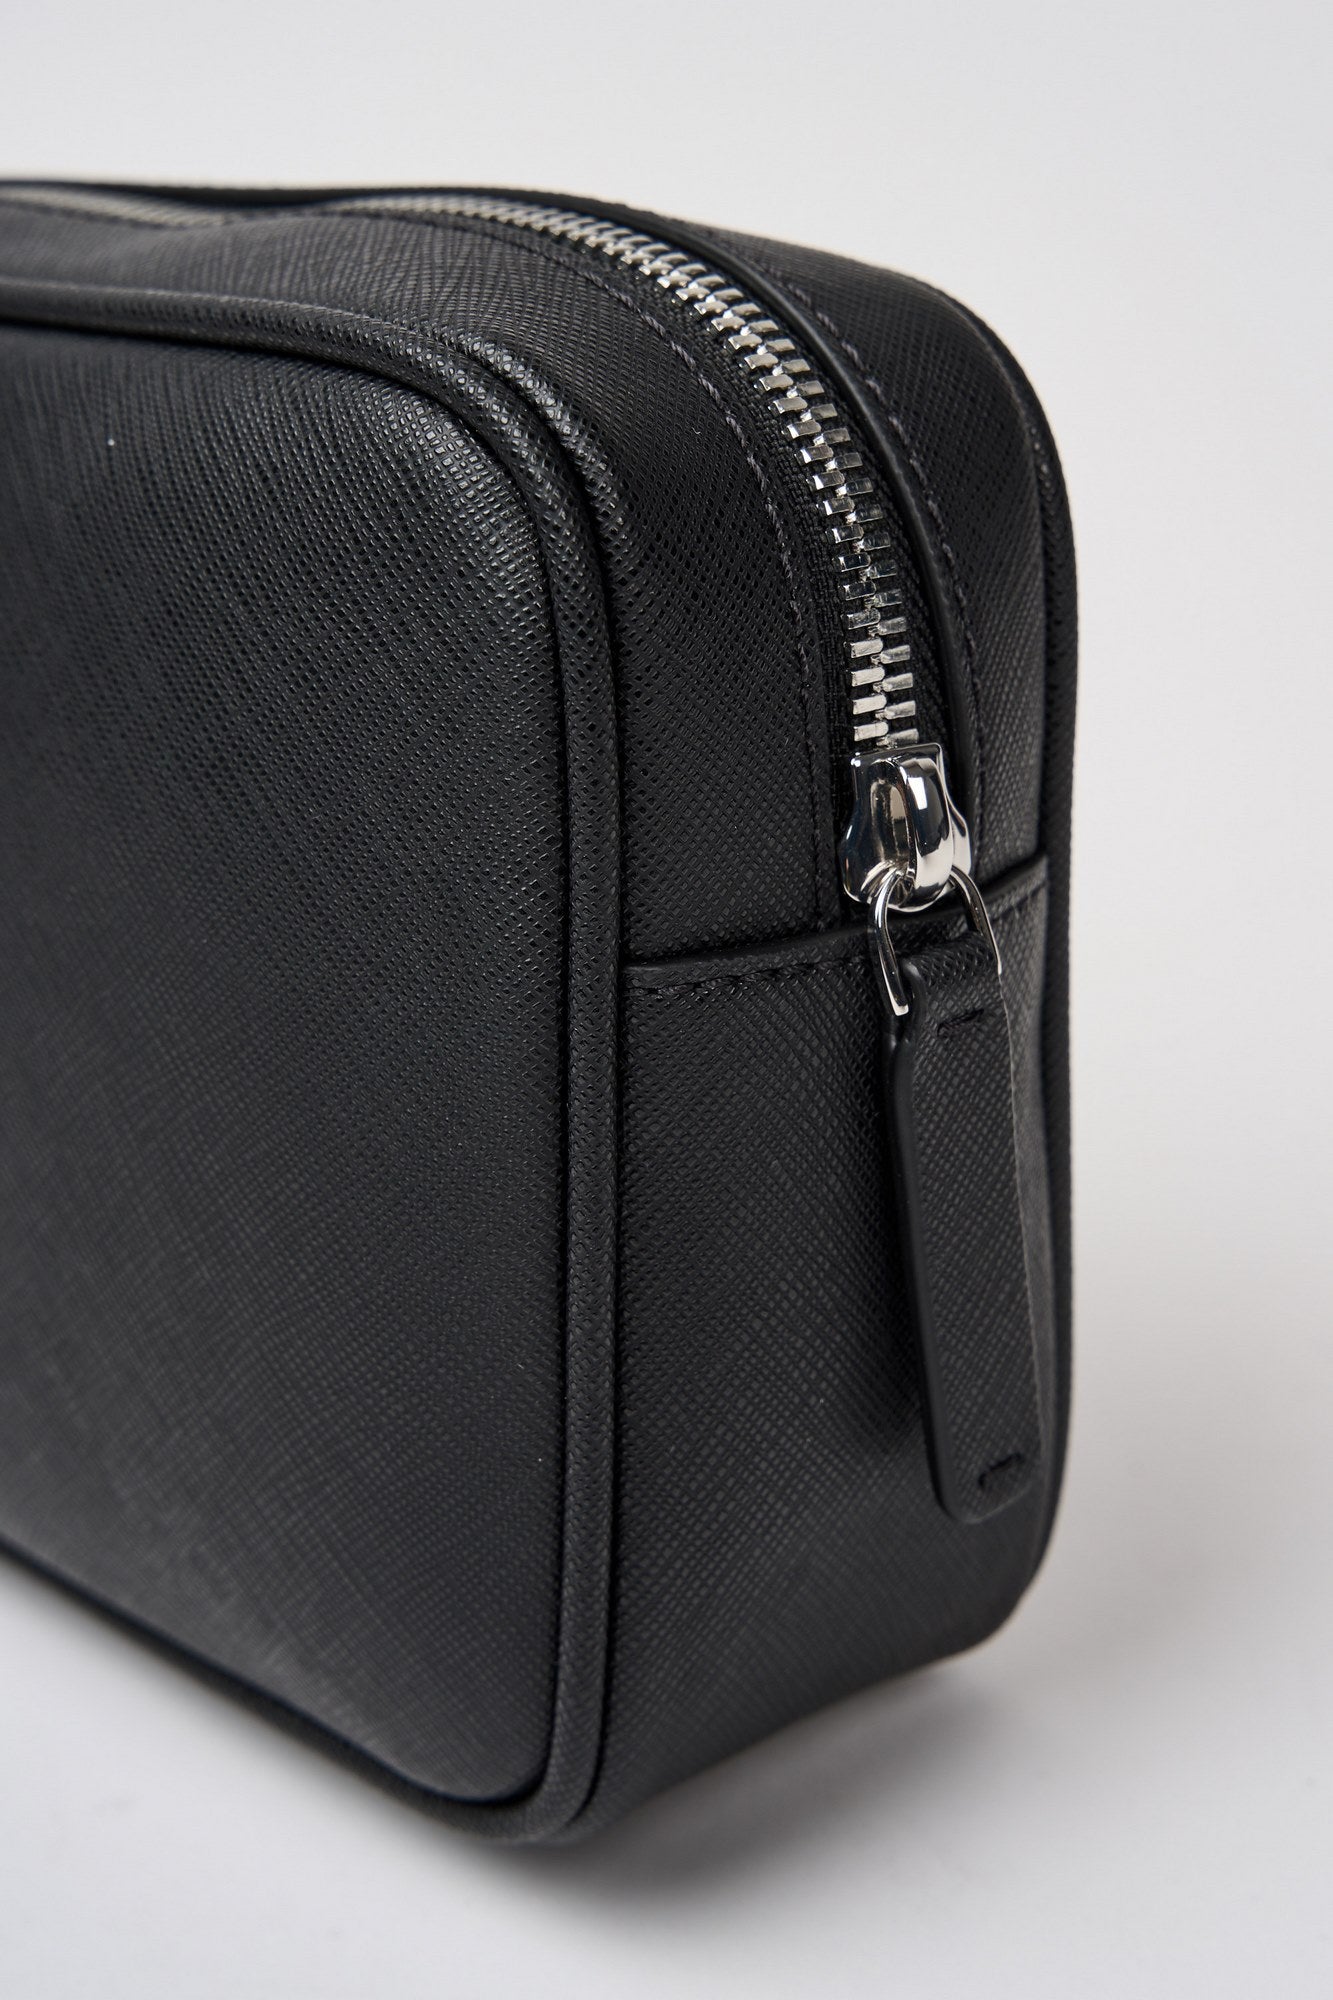 Emporio Armani Regenerated Leather Saffiano Beauty Case Black-6